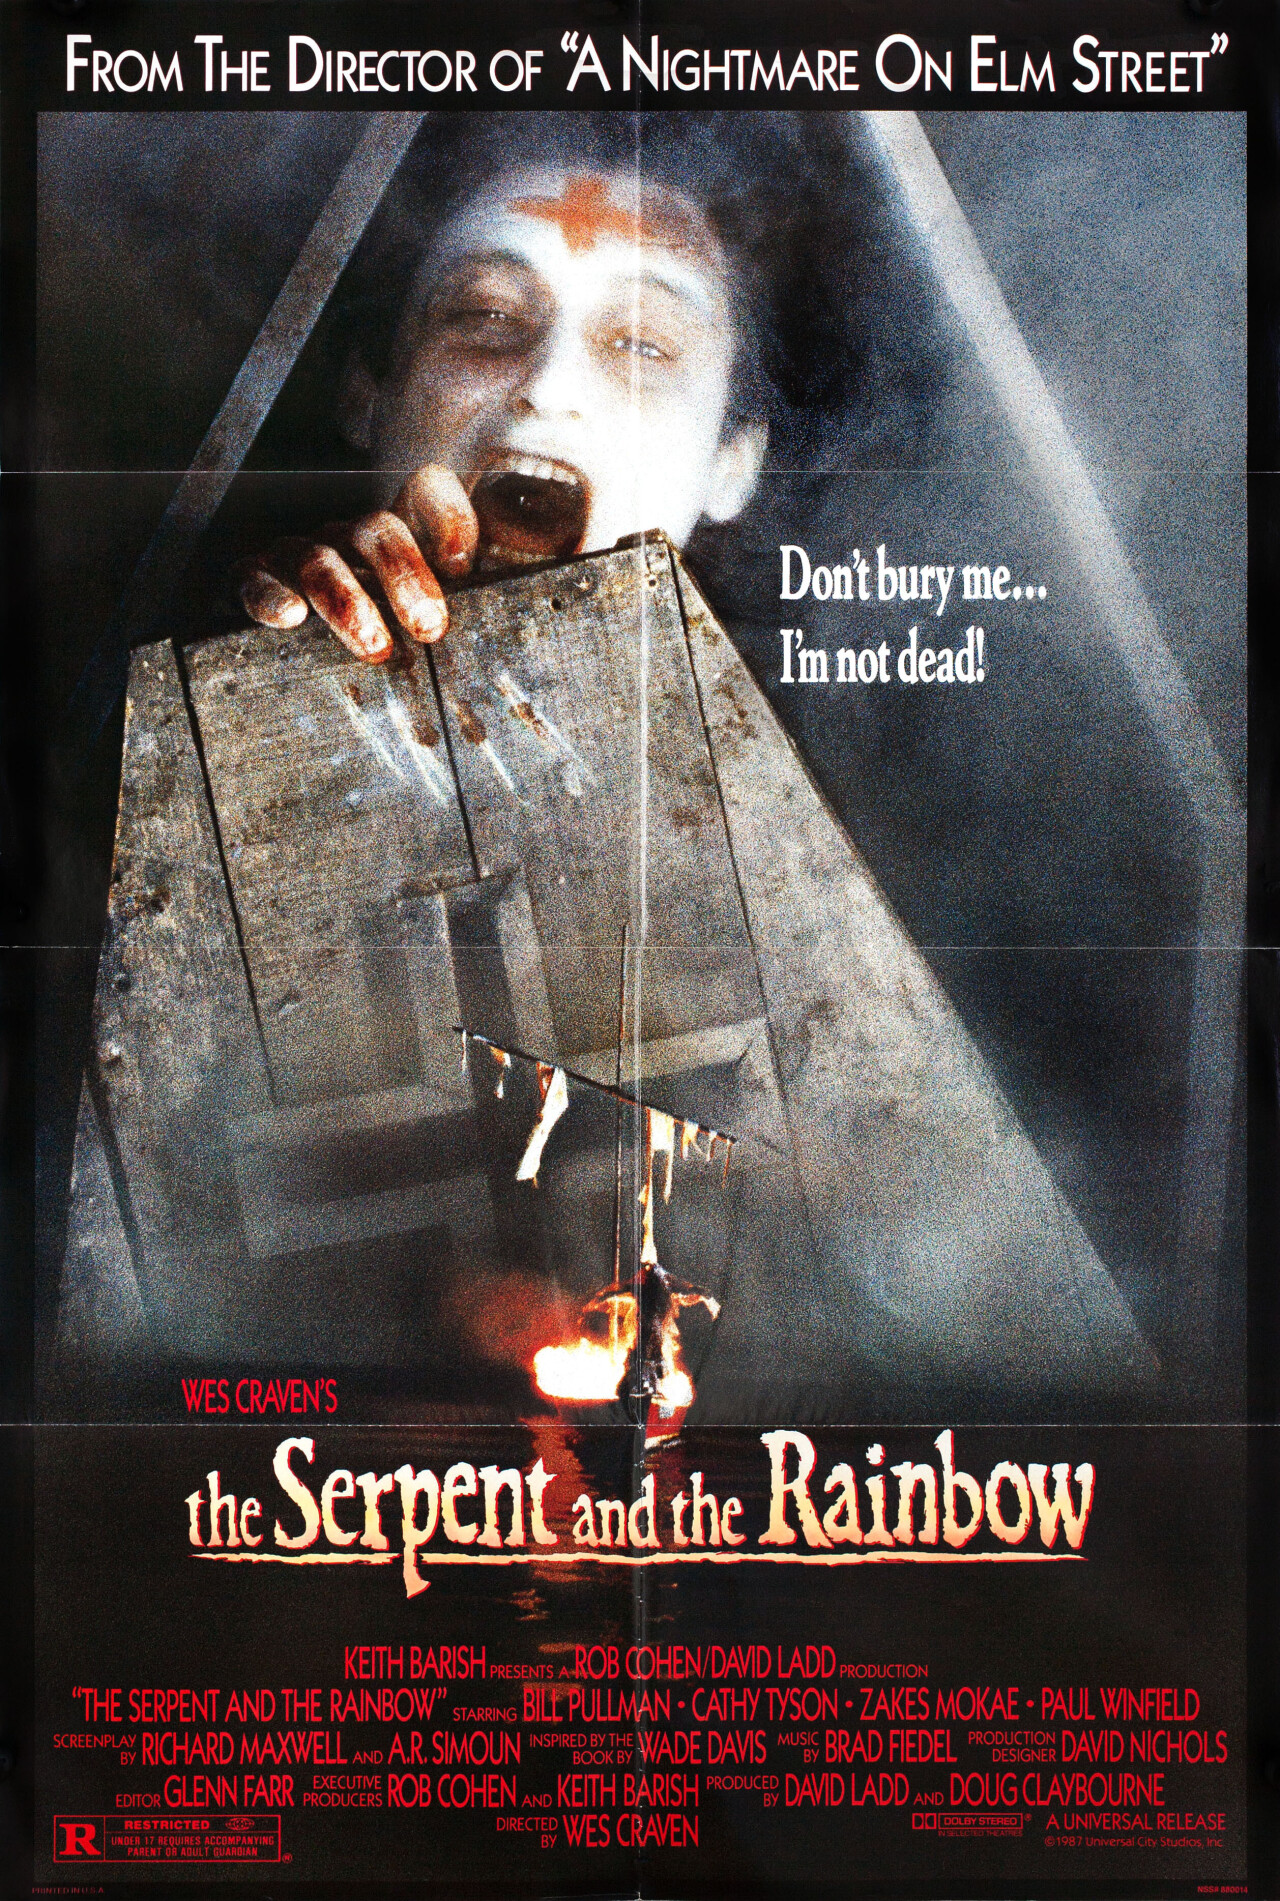 Змей и Радуга (The Serpent and the Rainbow, 1988), режиссёр Уэс Крэйвен, американский постер к фильму (ужасы, 1989 год)